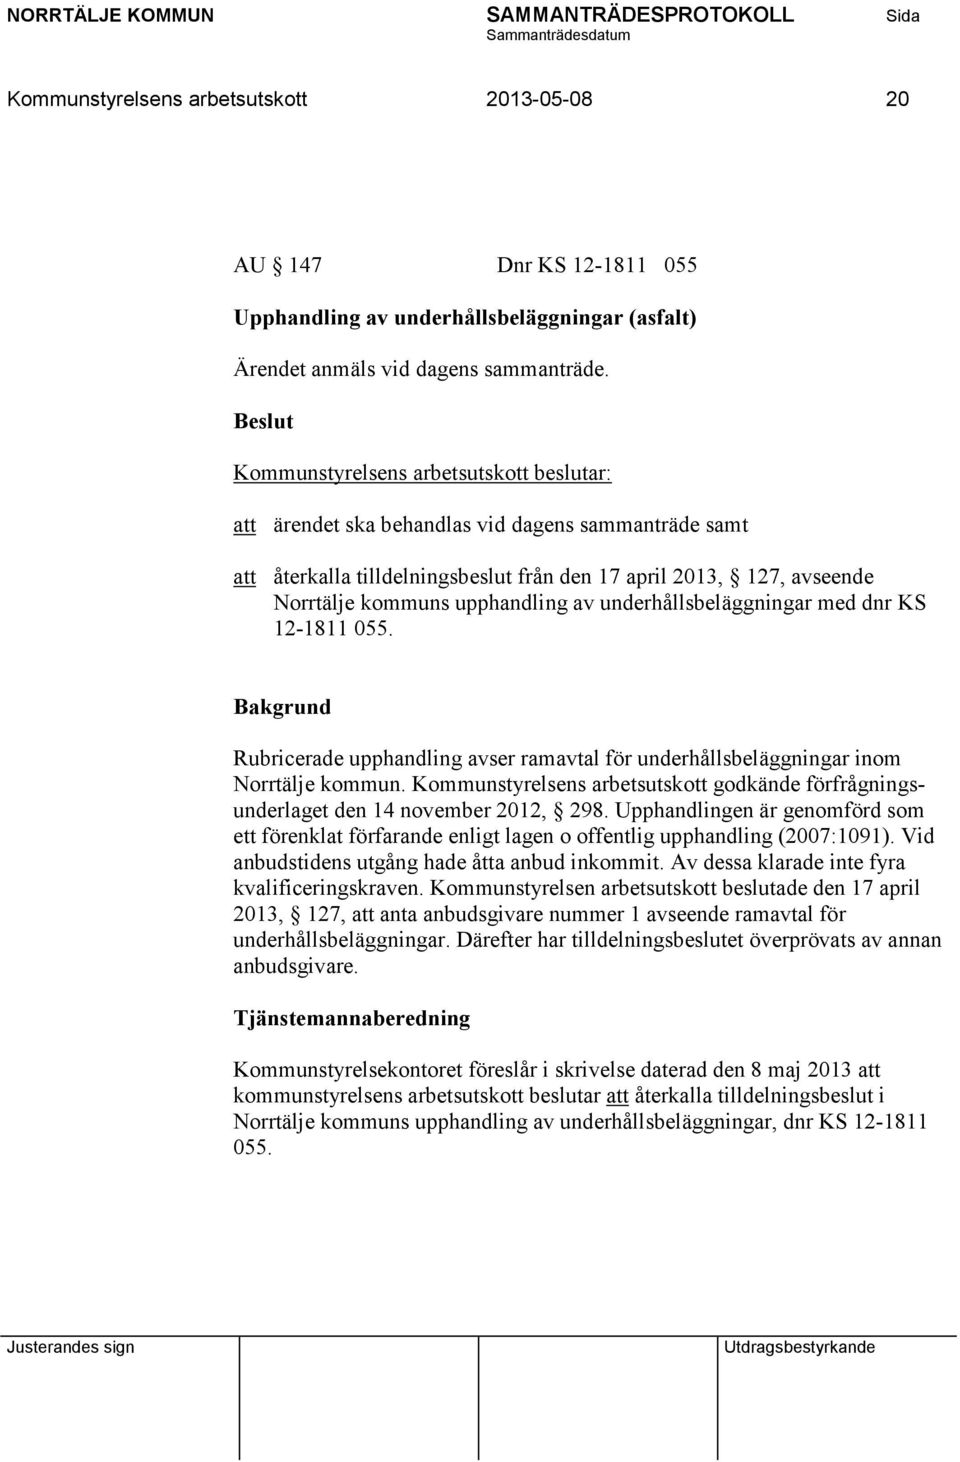 055. Rubricerade upphandling avser ramavtal för underhållsbeläggningar inom Norrtälje kommun. Kommunstyrelsens arbetsutskott godkände förfrågningsunderlaget den 14 november 2012, 298.